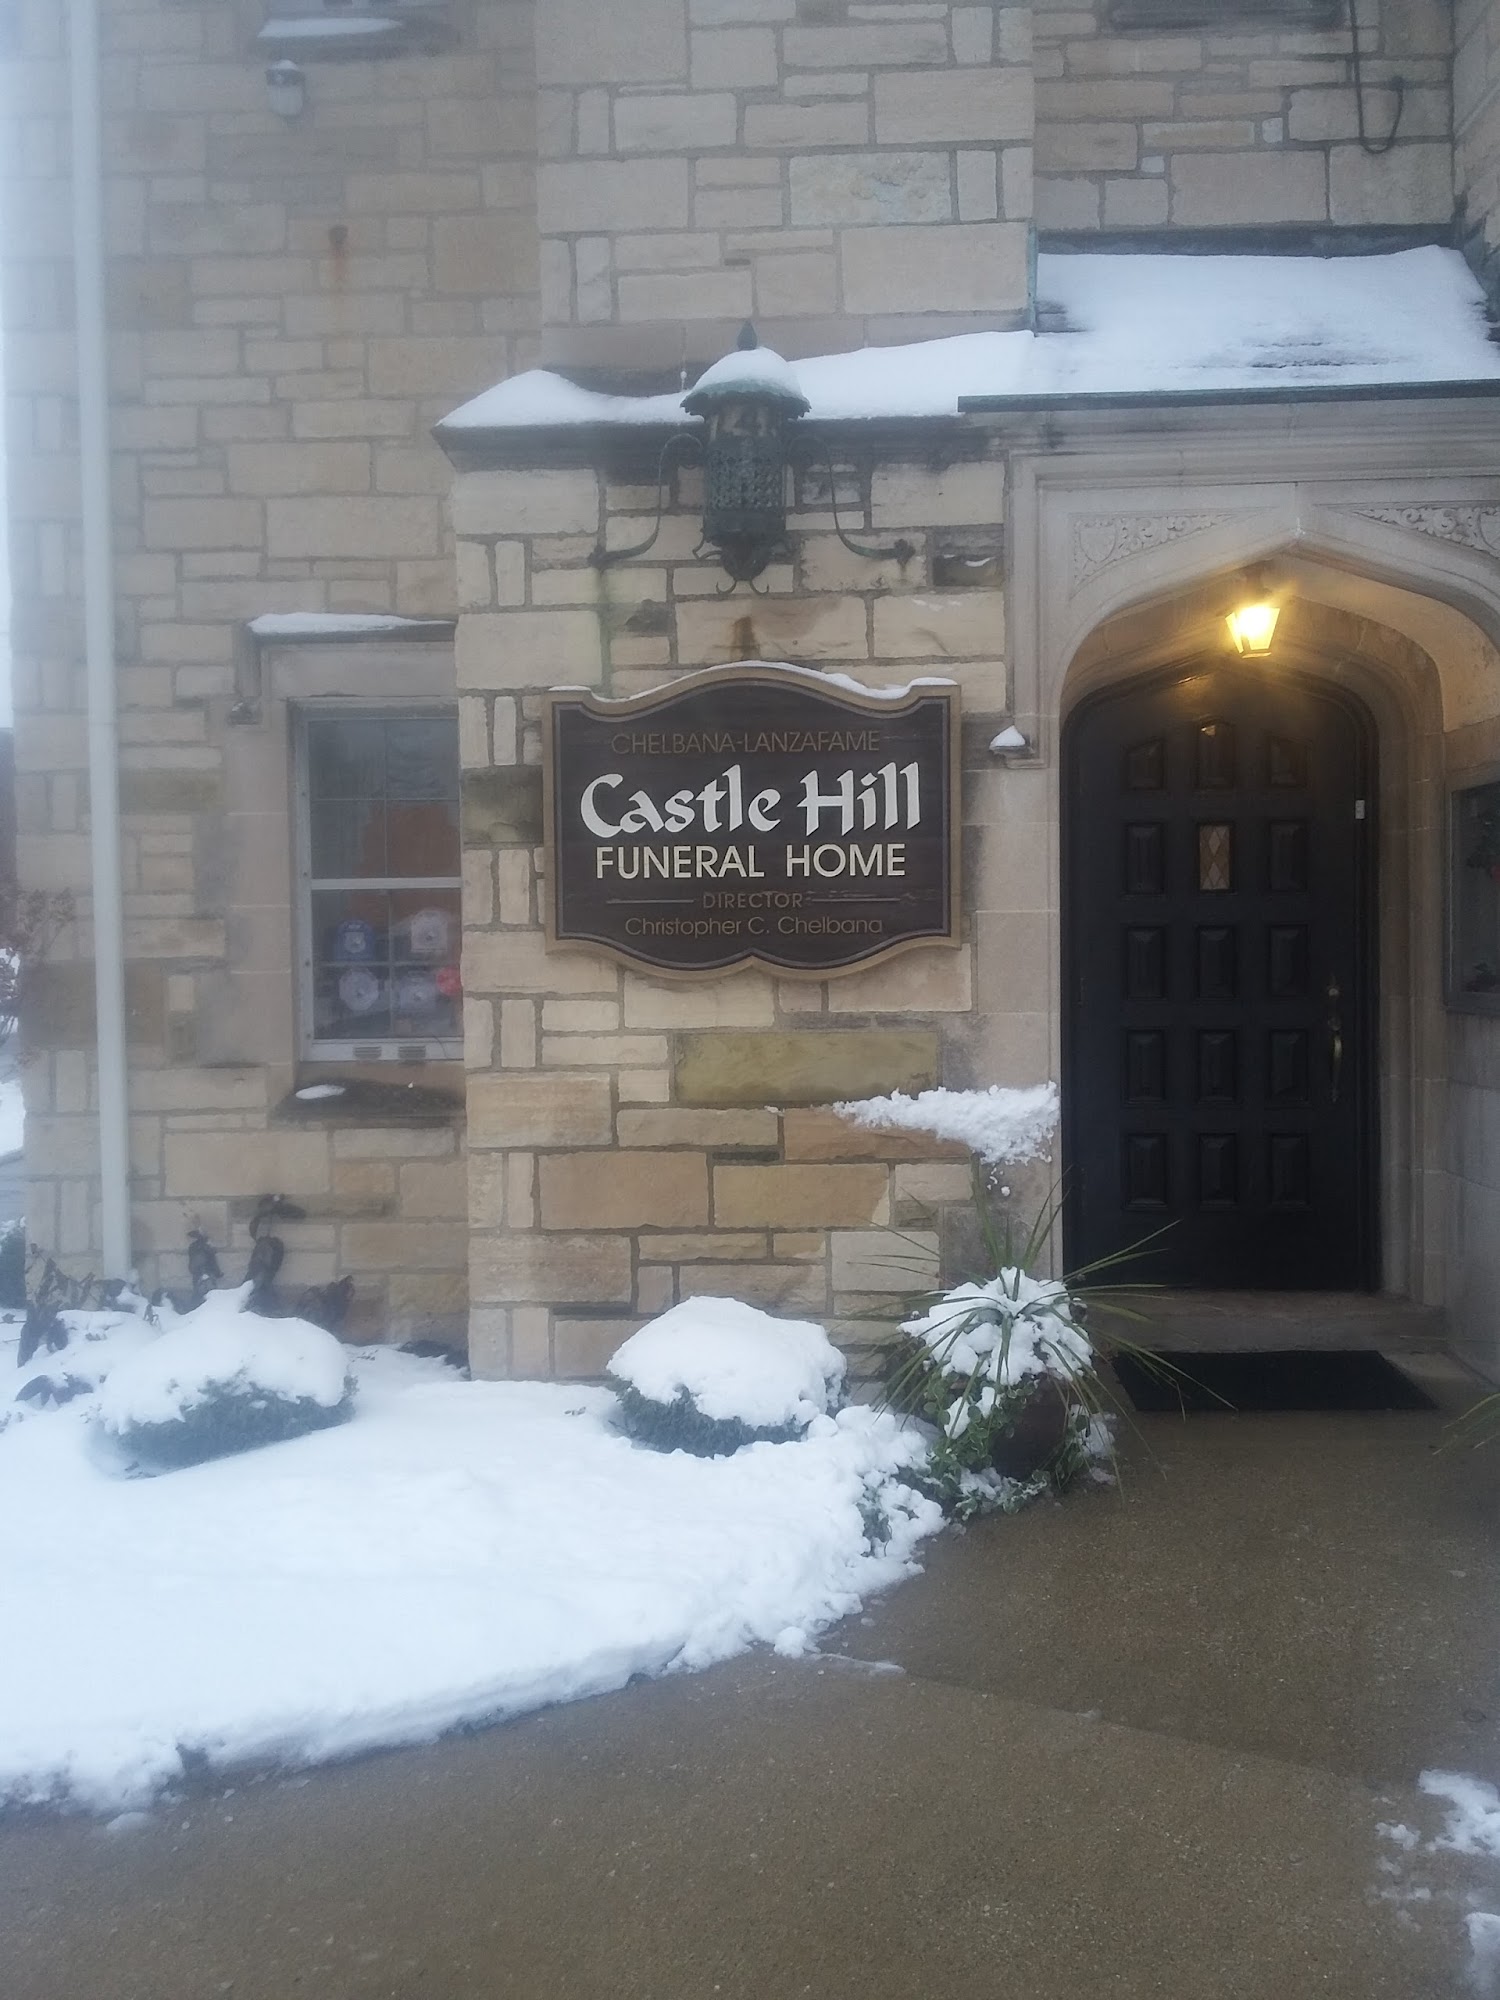 Castle Hill Funeral Home 248 155th Pl, Calumet City Illinois 60409